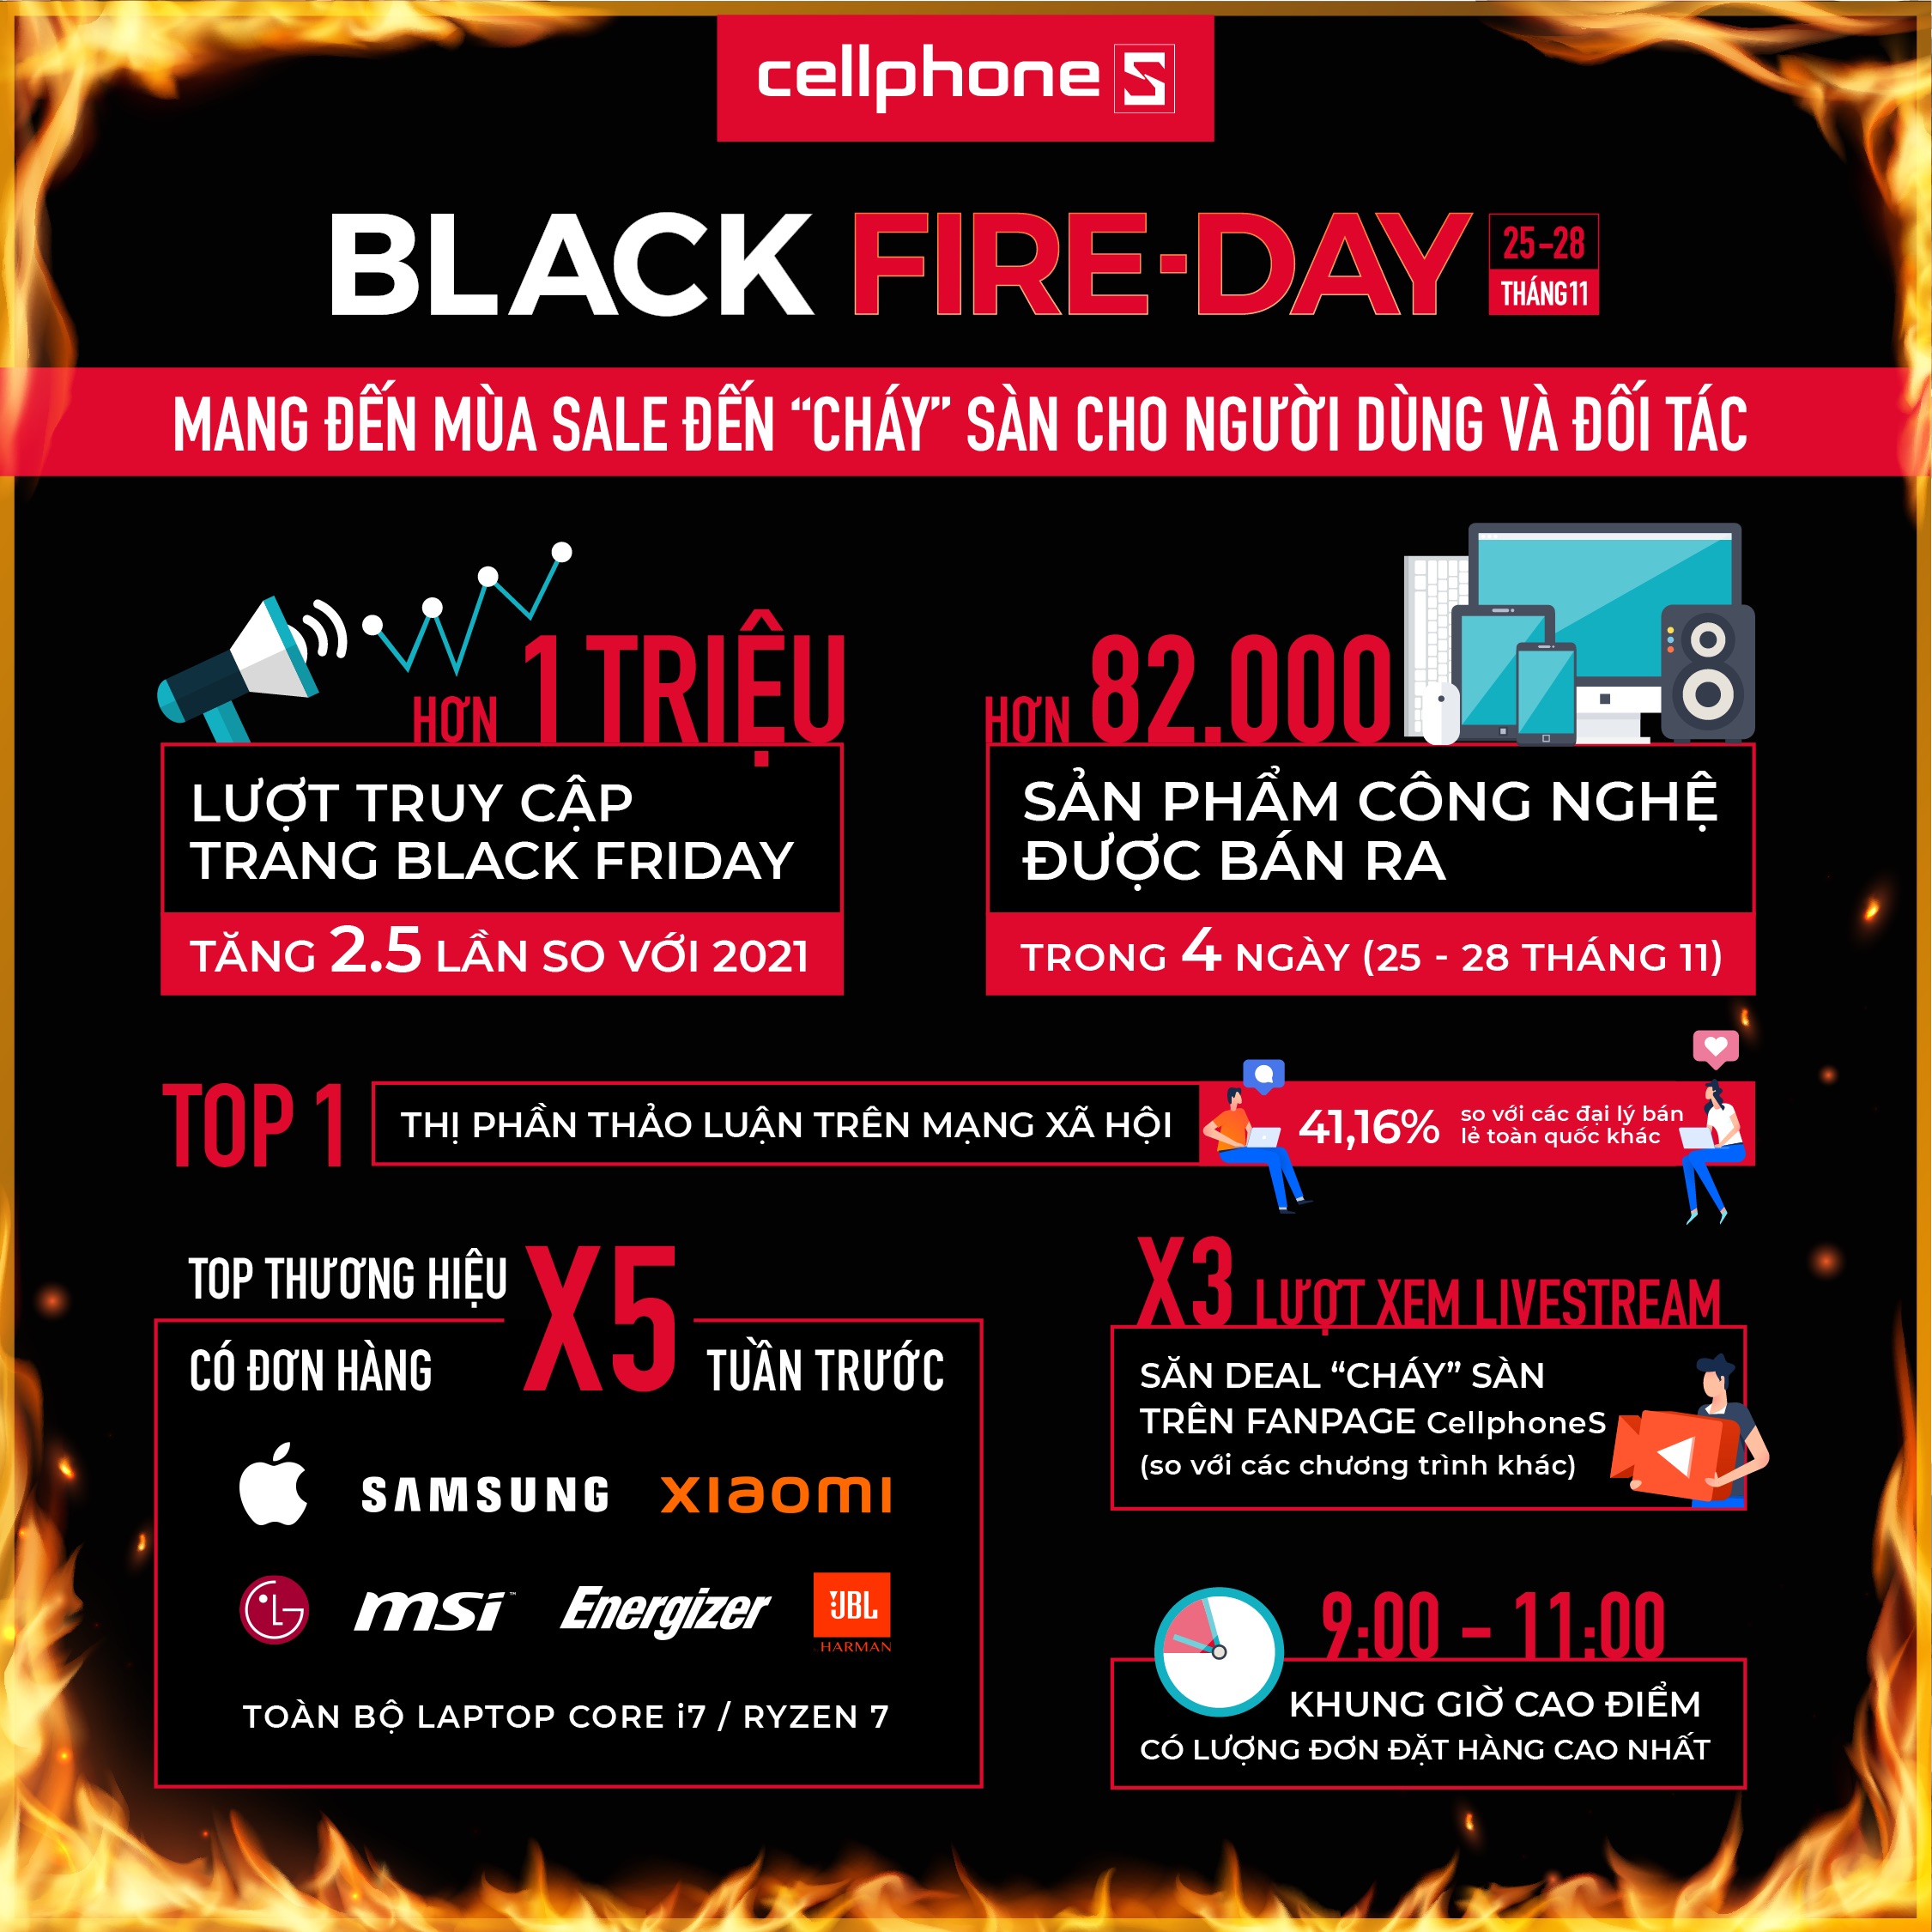 CellphoneS bùng nổ gấp 3 lần doanh số nhờ Black Fire-Day